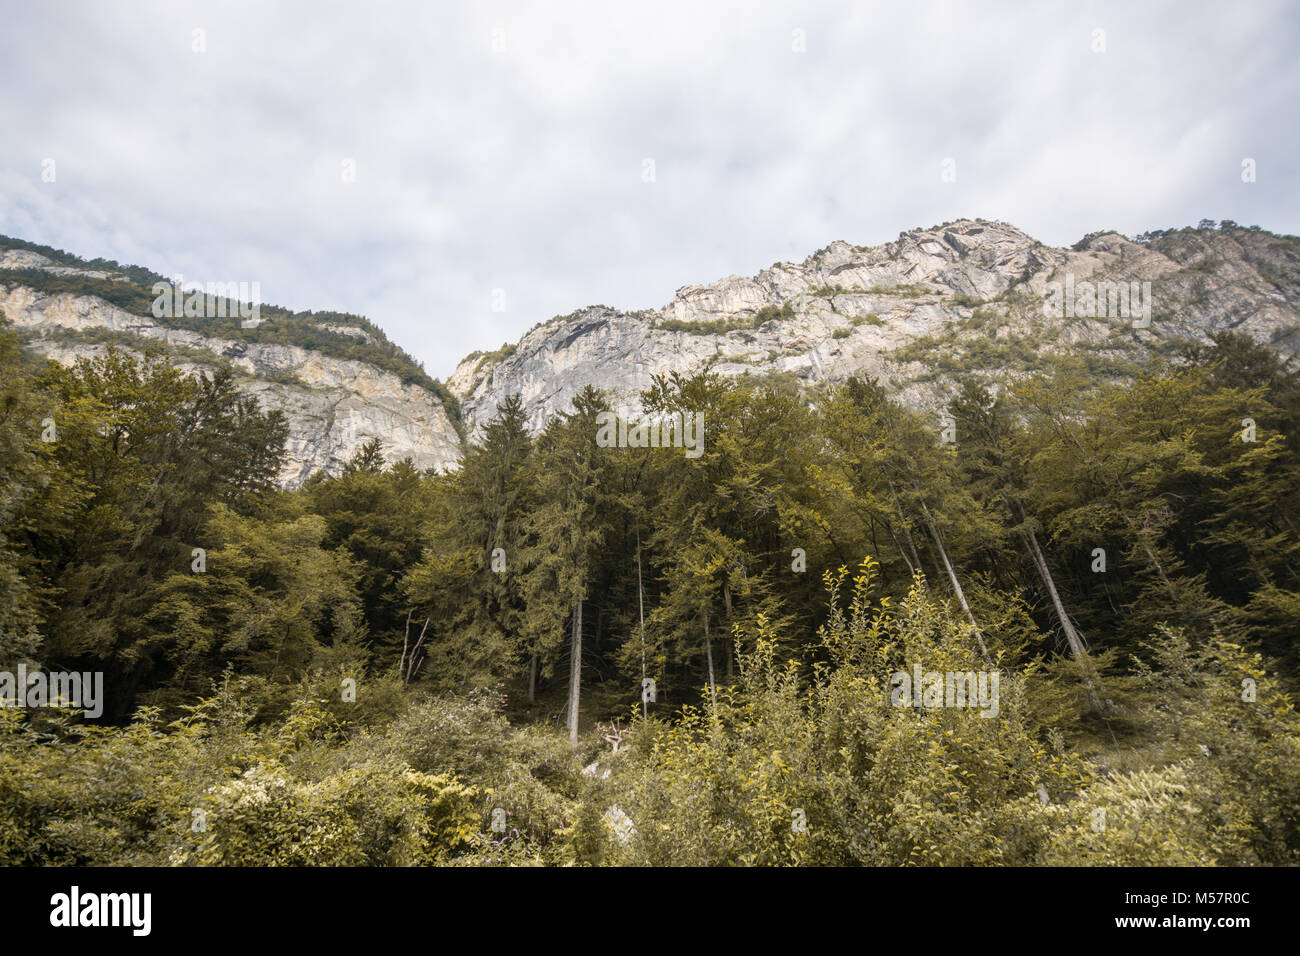 Schönsten Berge der gorgous Schweizer Alpen in der Schweiz, in Europa auf Reisen Reise Stockfoto